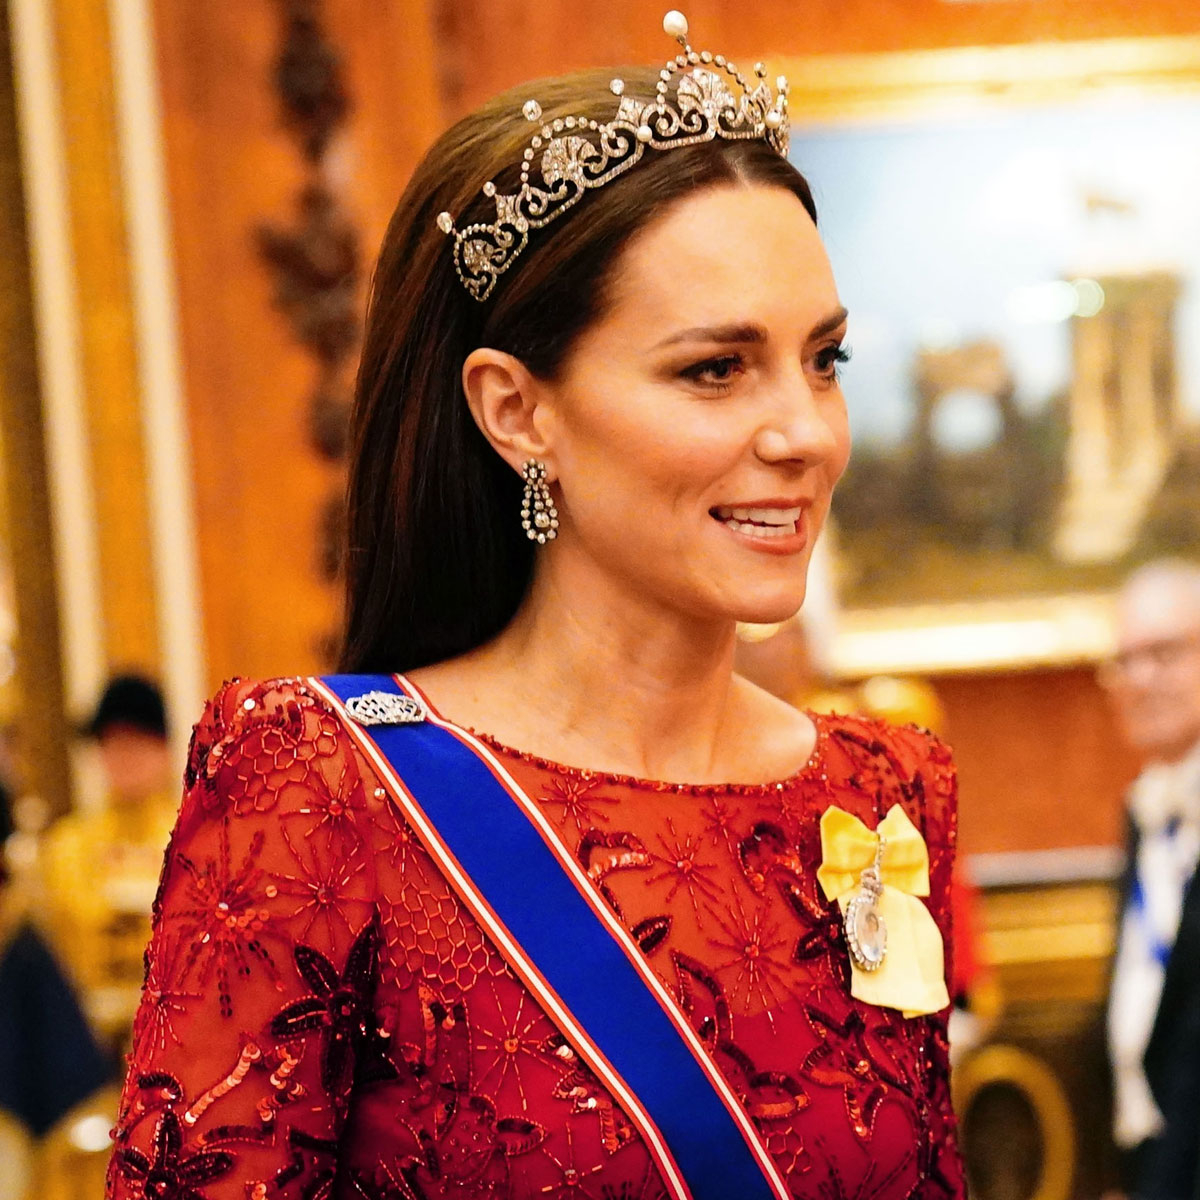 Kate Middleton Goes Full Princess Mode in Sparking Gown & Royal Tiara